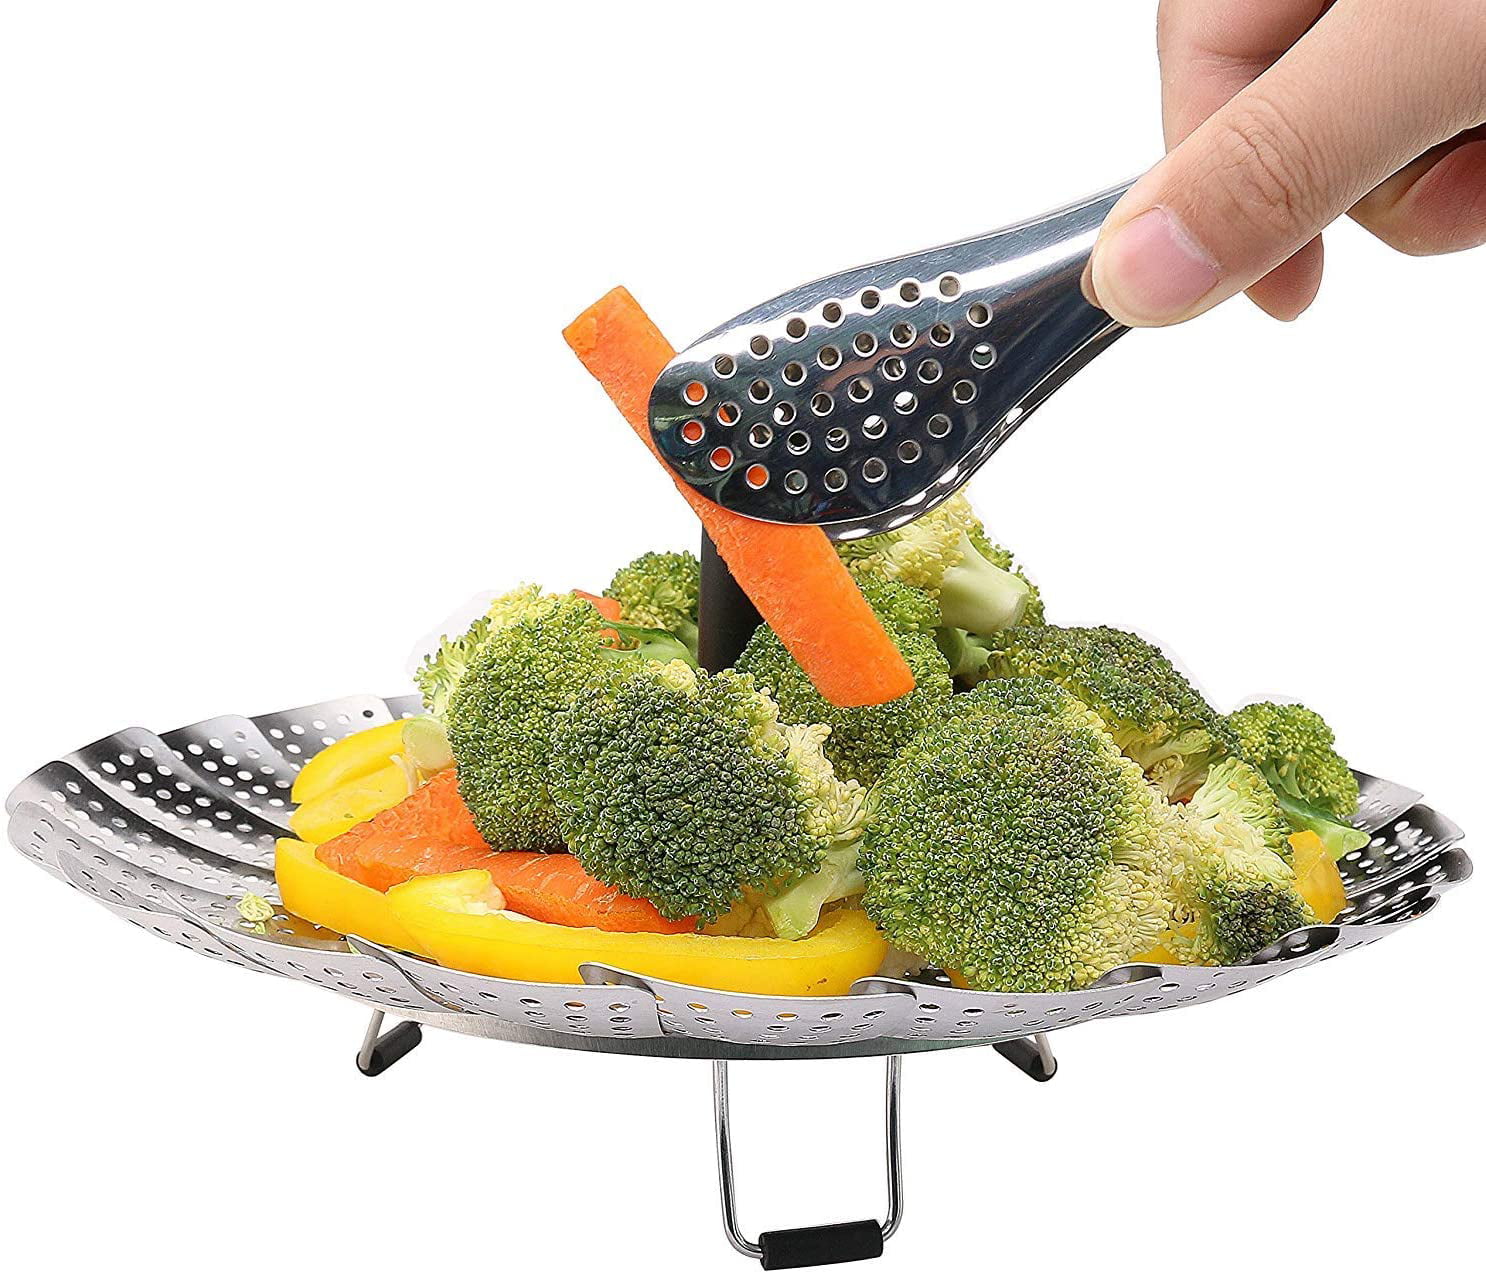 Vegetable Steamer Basket for Cooking Food Veggie Broccoli Meat Steamer Pot  Cooker Expandable Steel Steamer (6.3-10.3)